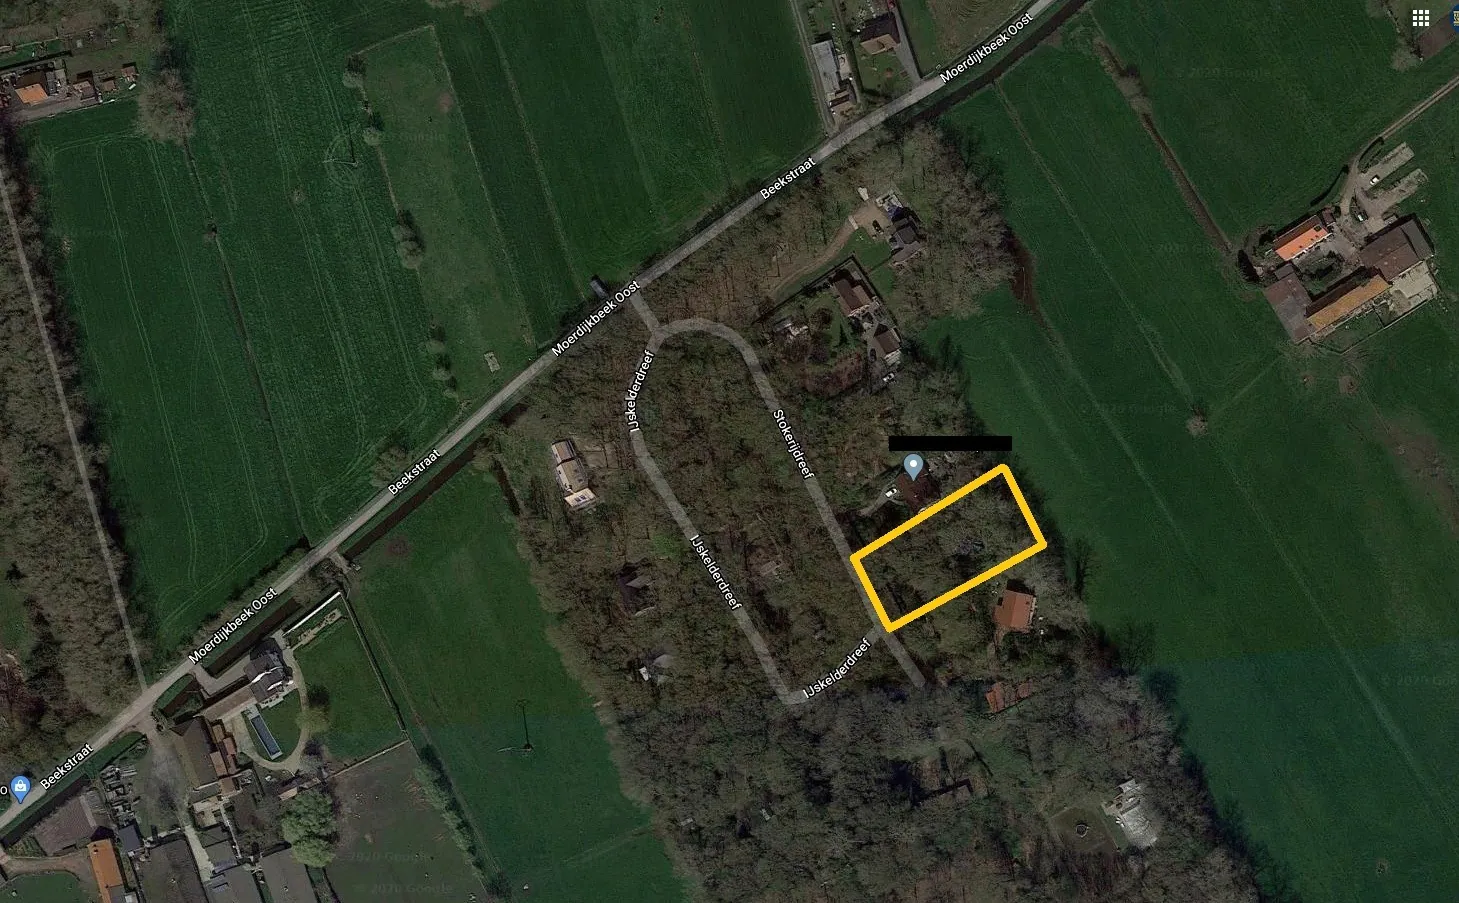 Perceel bouwgrond van 1407 m² met chalet in Leugenboombos te Koekelare. 